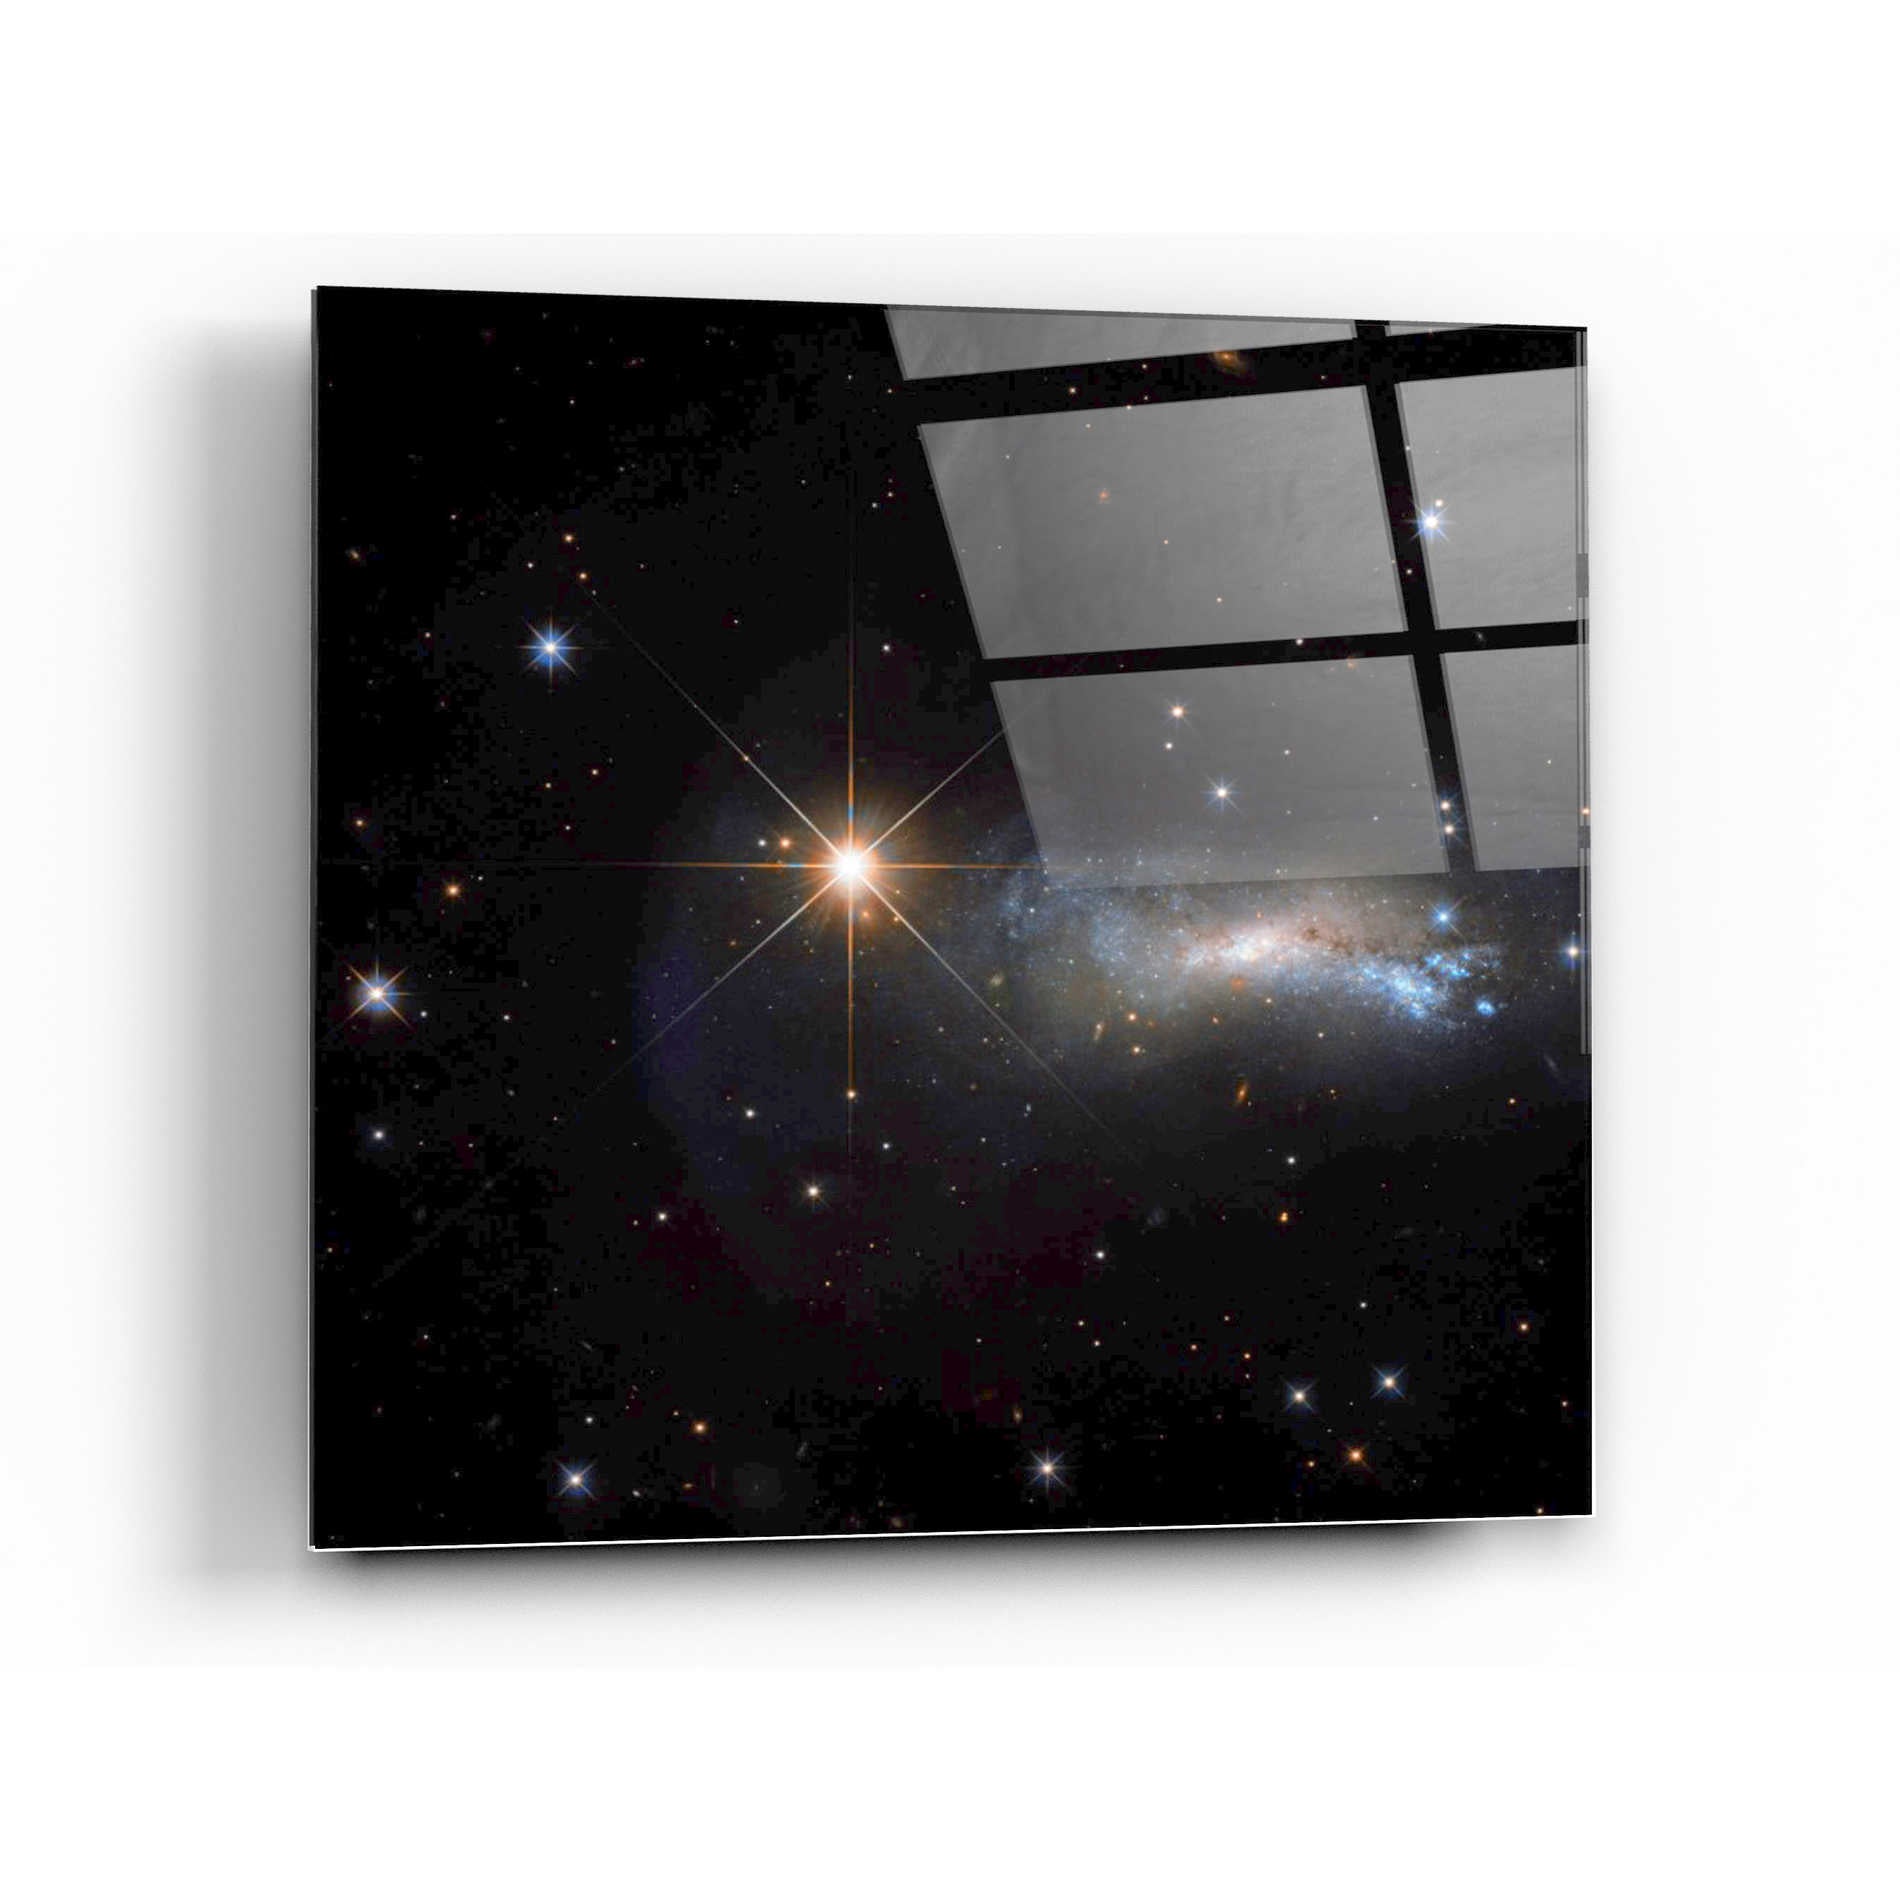 Epic Art "Outshine" Hubble Space Telescope Acrylic Glass Wall Art,24x24